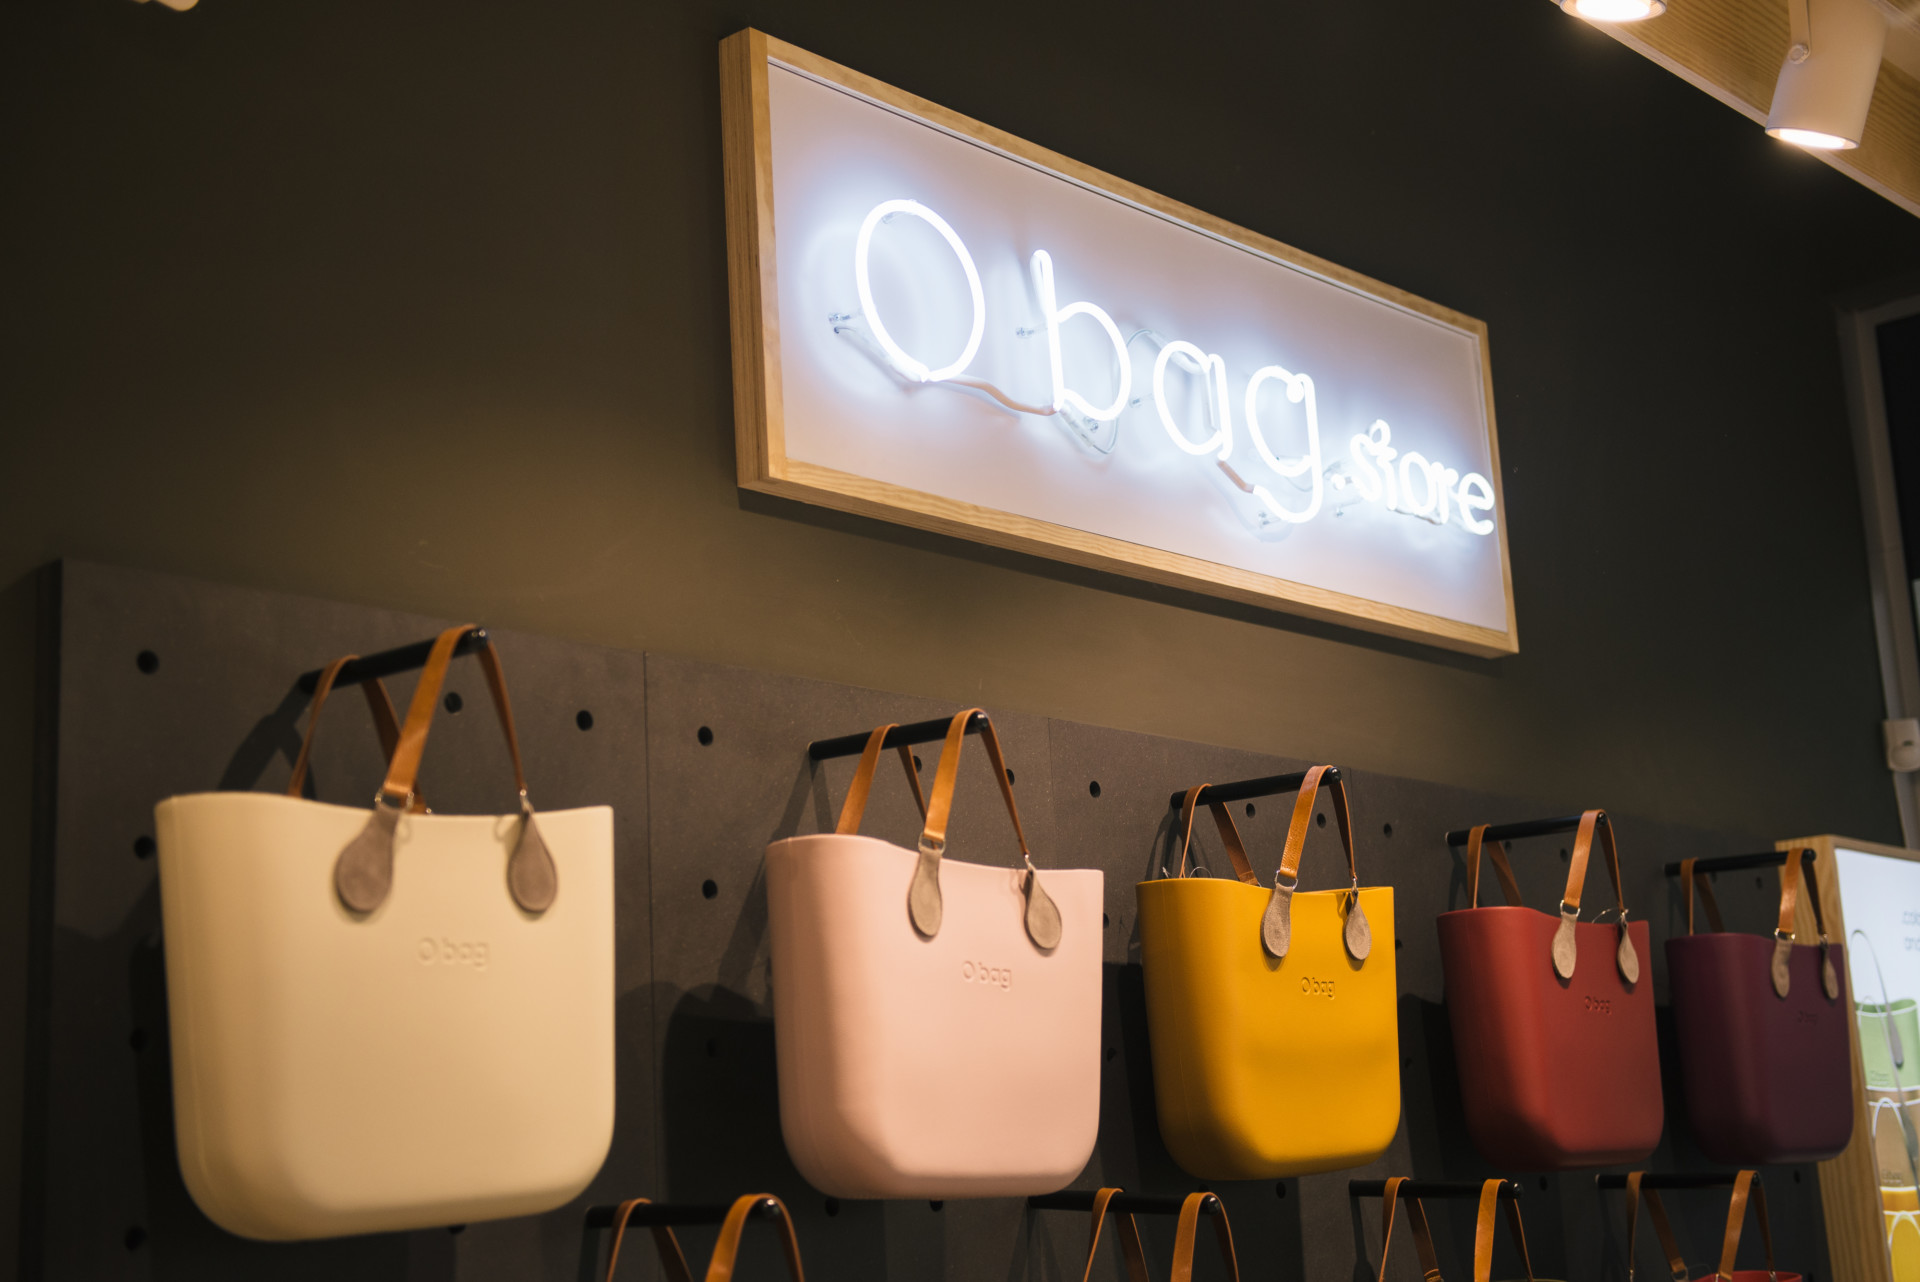 После Ocean Plaza новые магазины O bag будут открыты в Одессе и Харькове